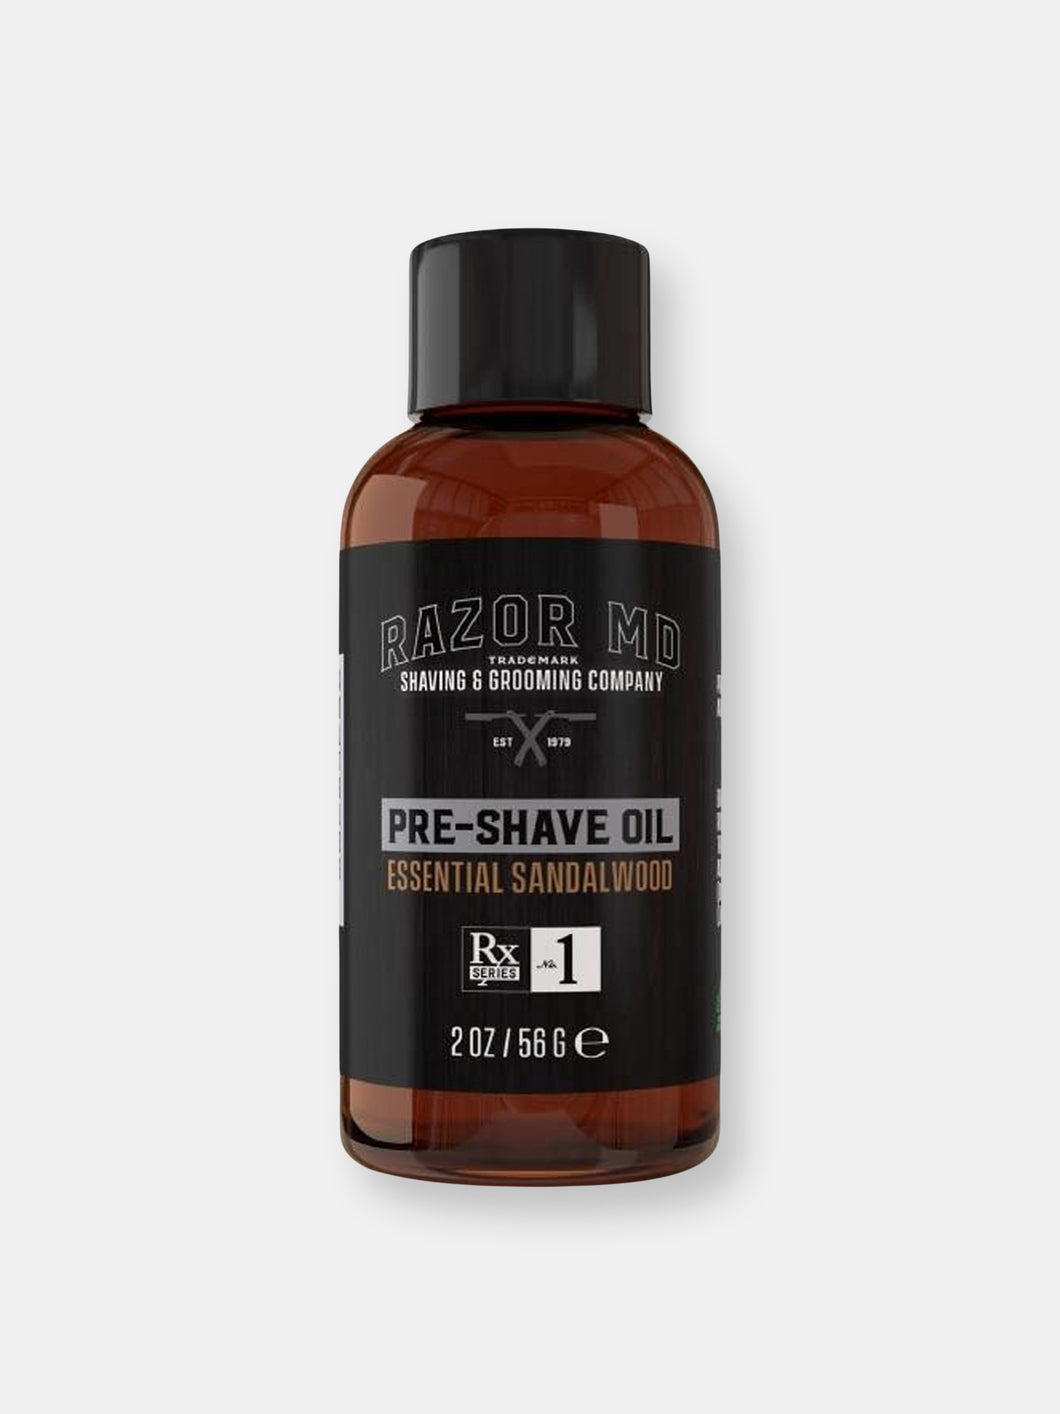 RAZOR MD Pre-shave Oil Sandalwood